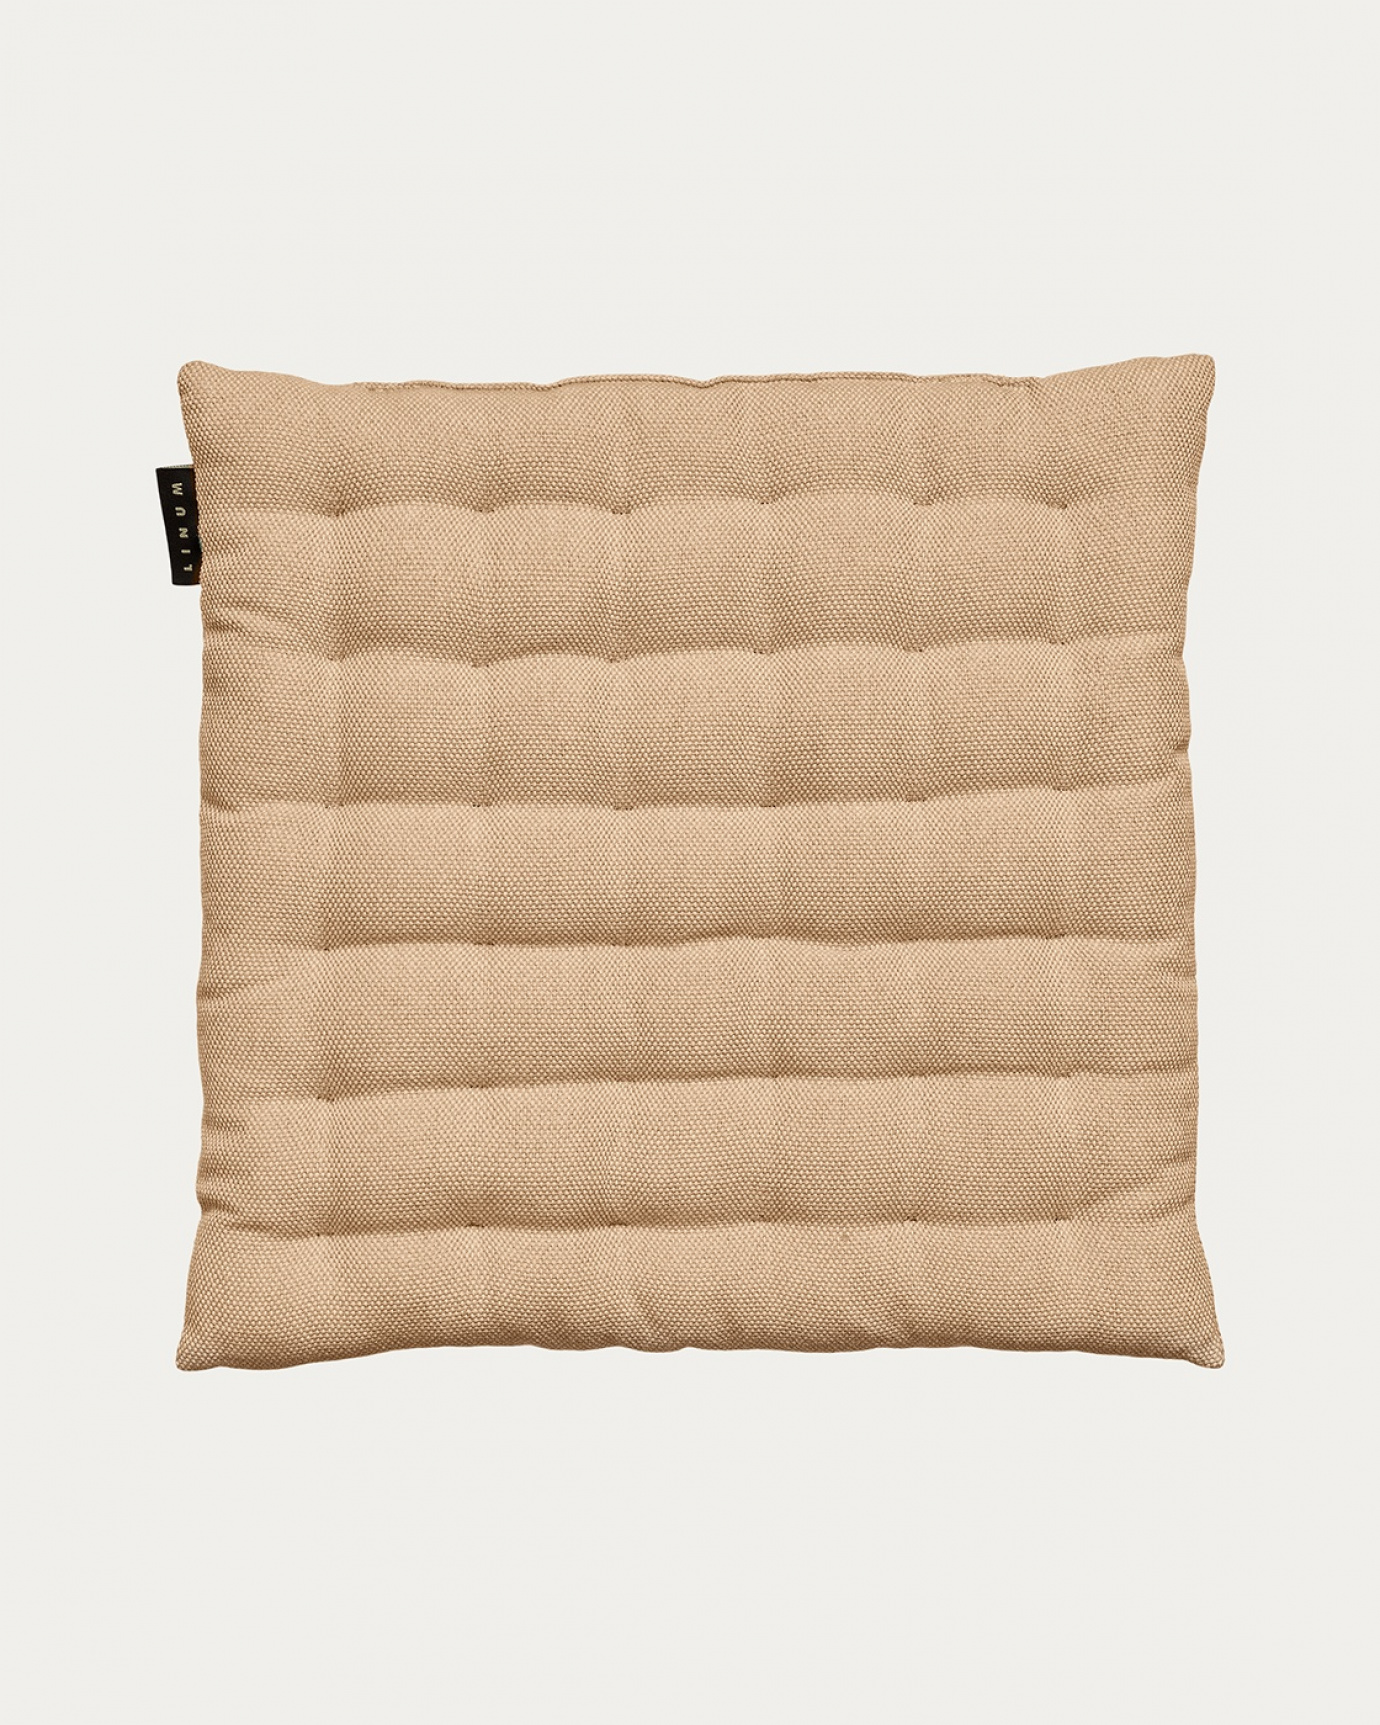 Produktbild kamelbraun PEPPER Sitzkissen aus weicher Baumwolle mit Füllung aus recyceltem Polyester von LINUM DESIGN. Größe 40x40 cm.